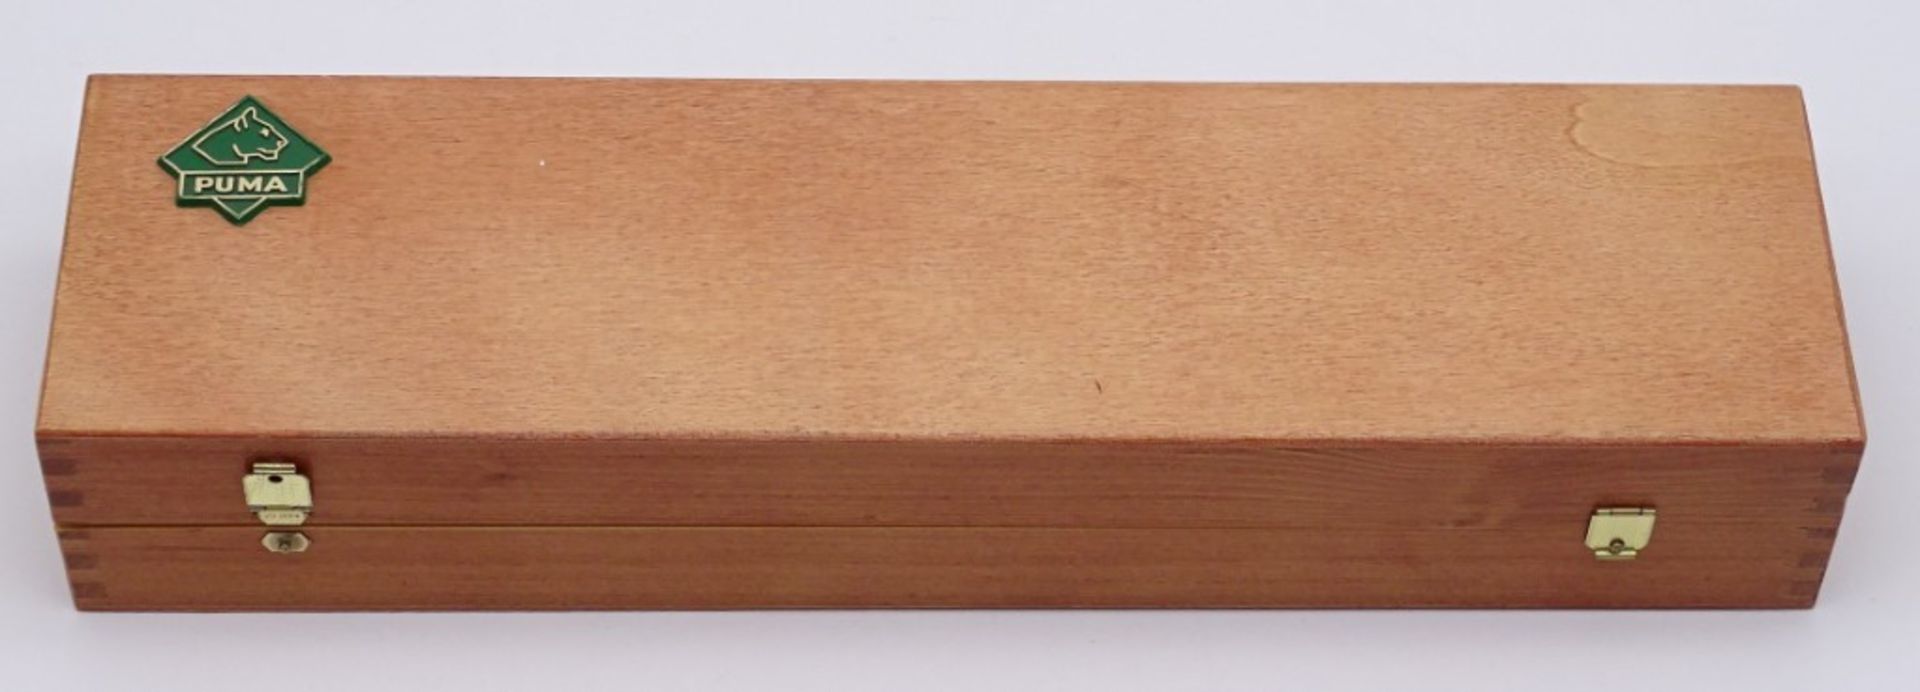 PUMA Waidbesteck Waidblatt Messer in Holzkasten, No. 3588, L. 33,0cm, mit Scheide u. kl. Messer - Bild 2 aus 6